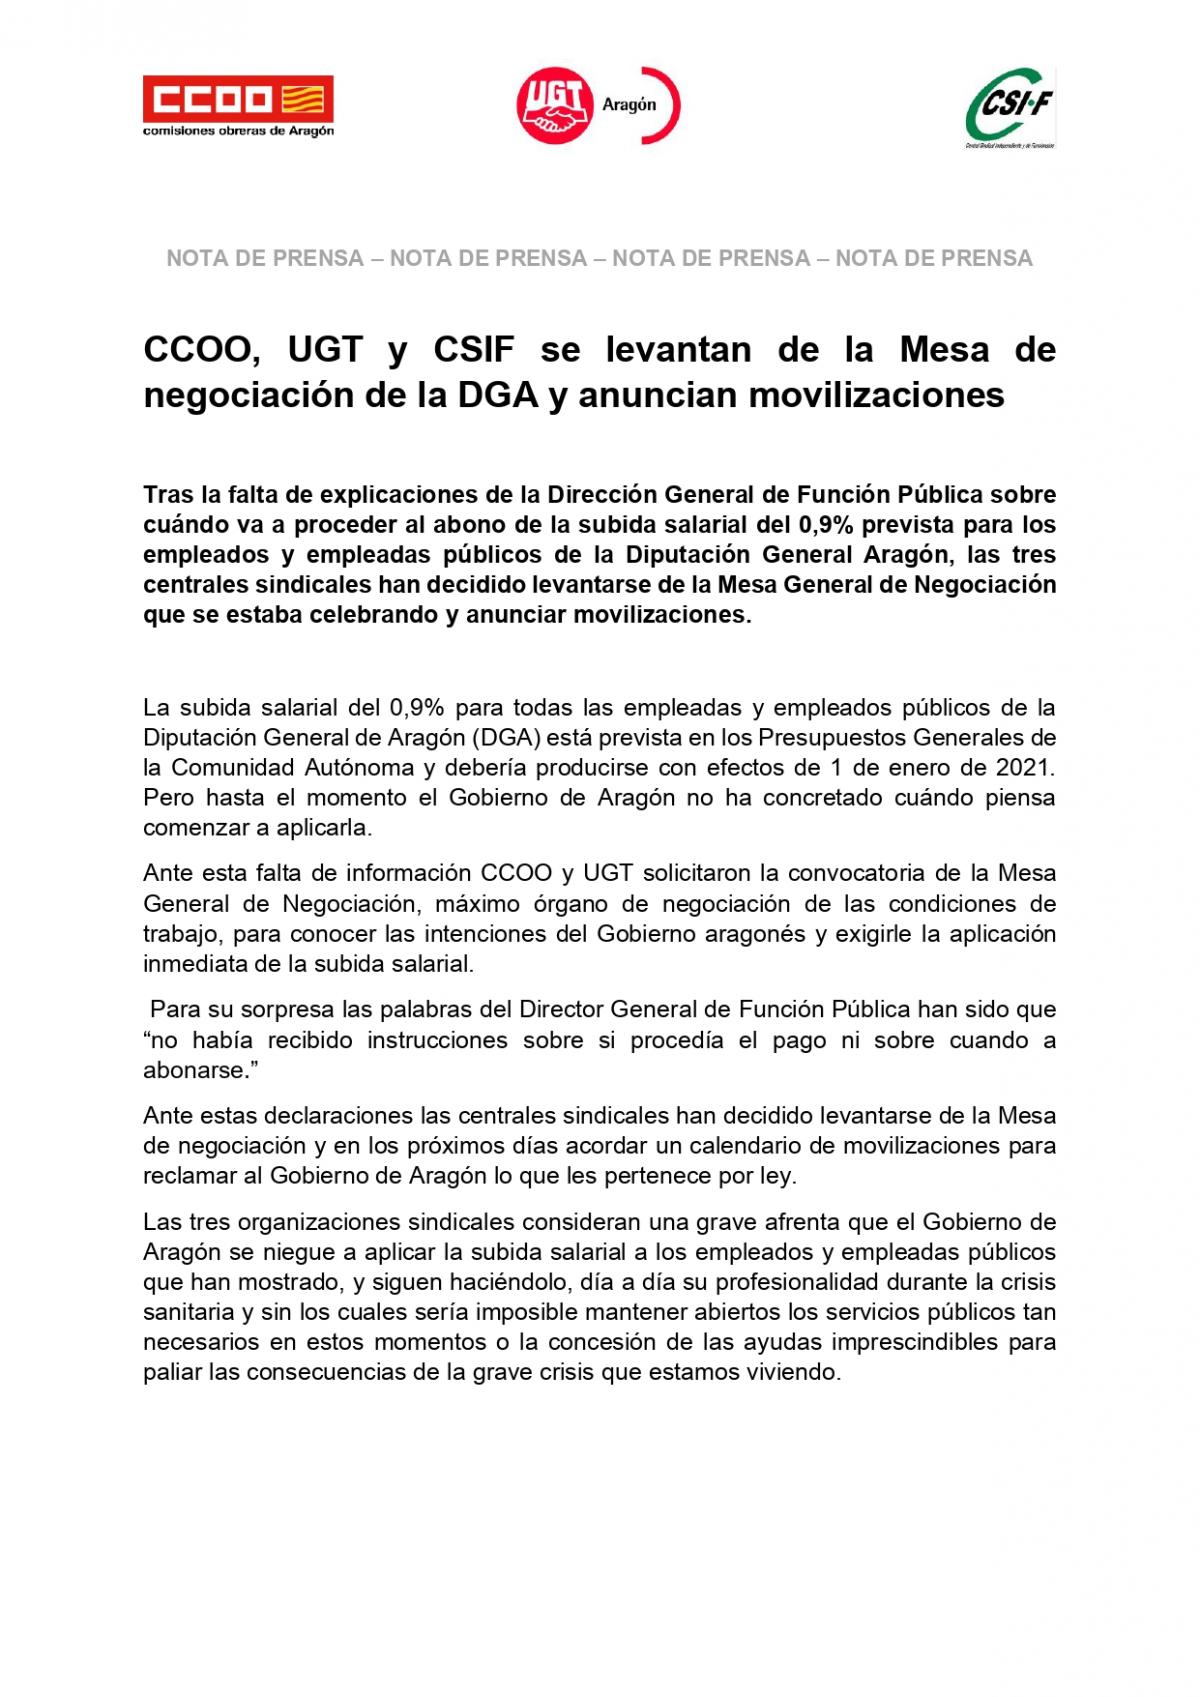 CCOO INFORMA 20210415 NP CCOO UGT CSIF abandonan la Mesa de Negociacion